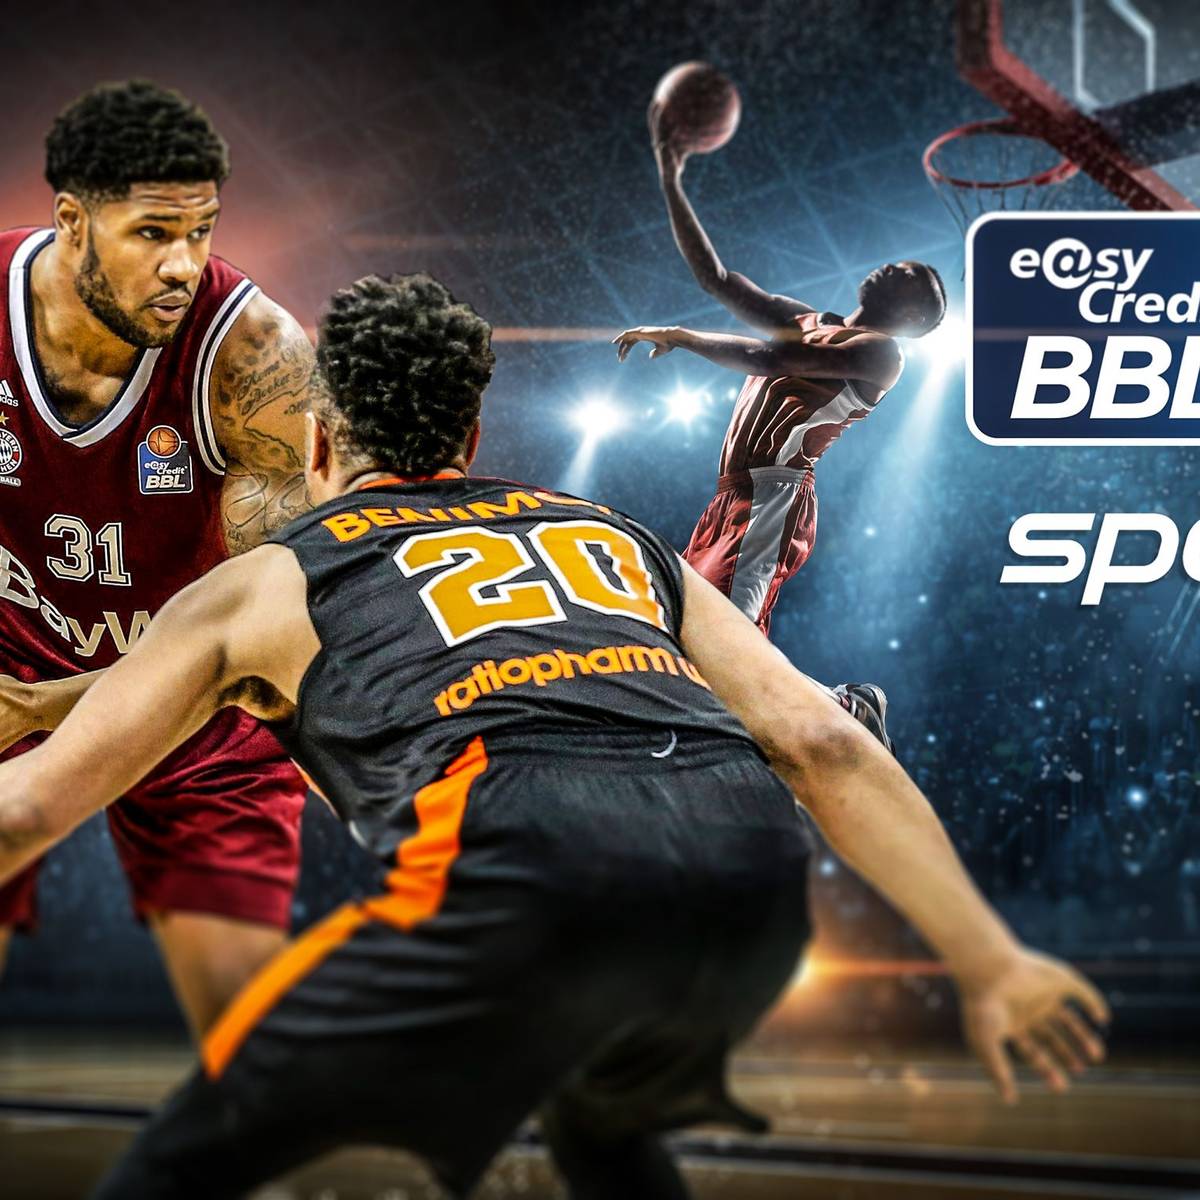 Langfristige Partnerschaft mit der Deutschen Telekom SPORT1 zeigt die easyCredit Basketball Bundesliga auch in den kommenden fünf Jahren live und exklusiv im deutschen Free-TV